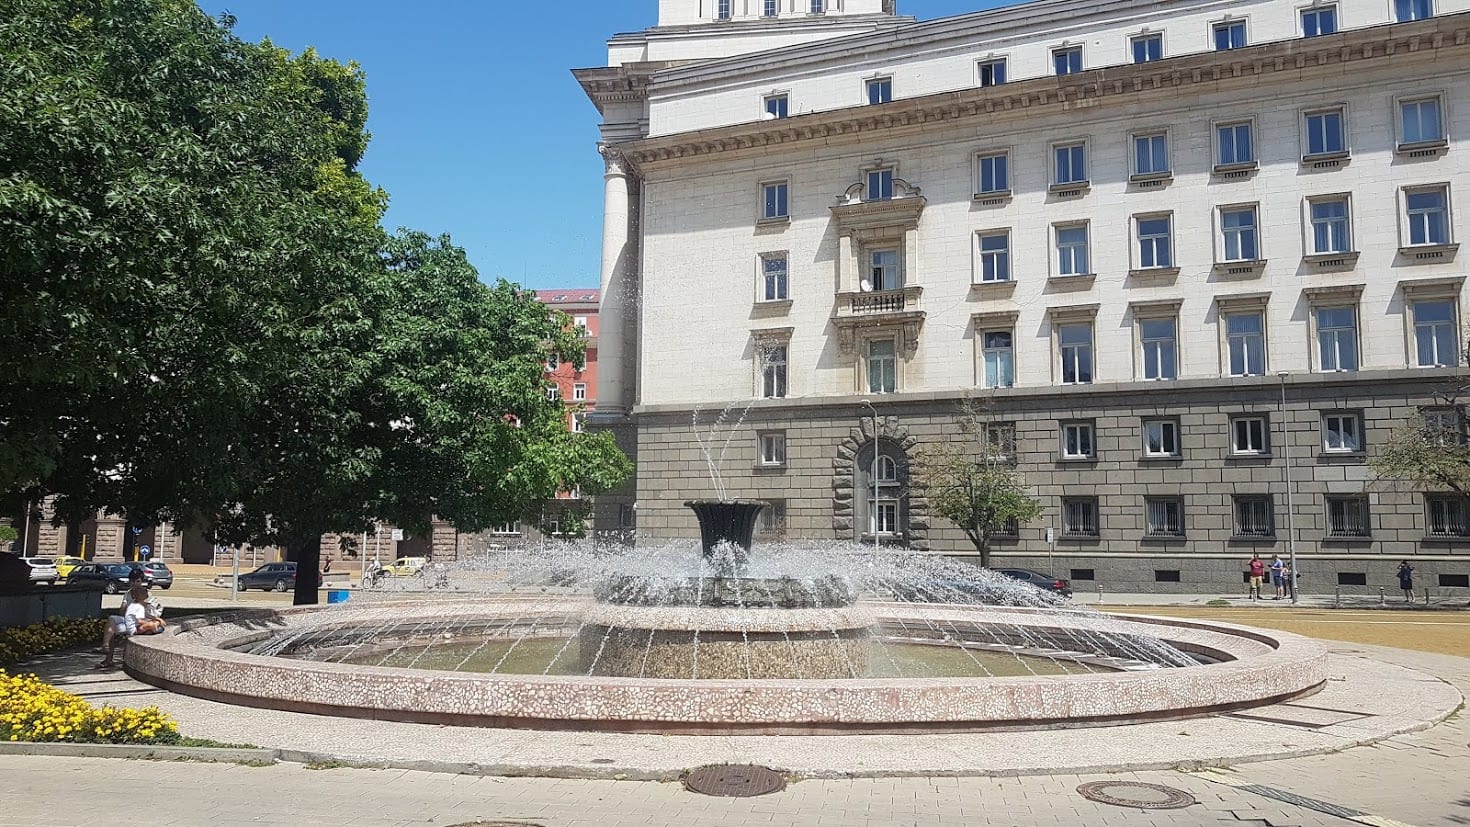 Fountain at Atanas Burov Square